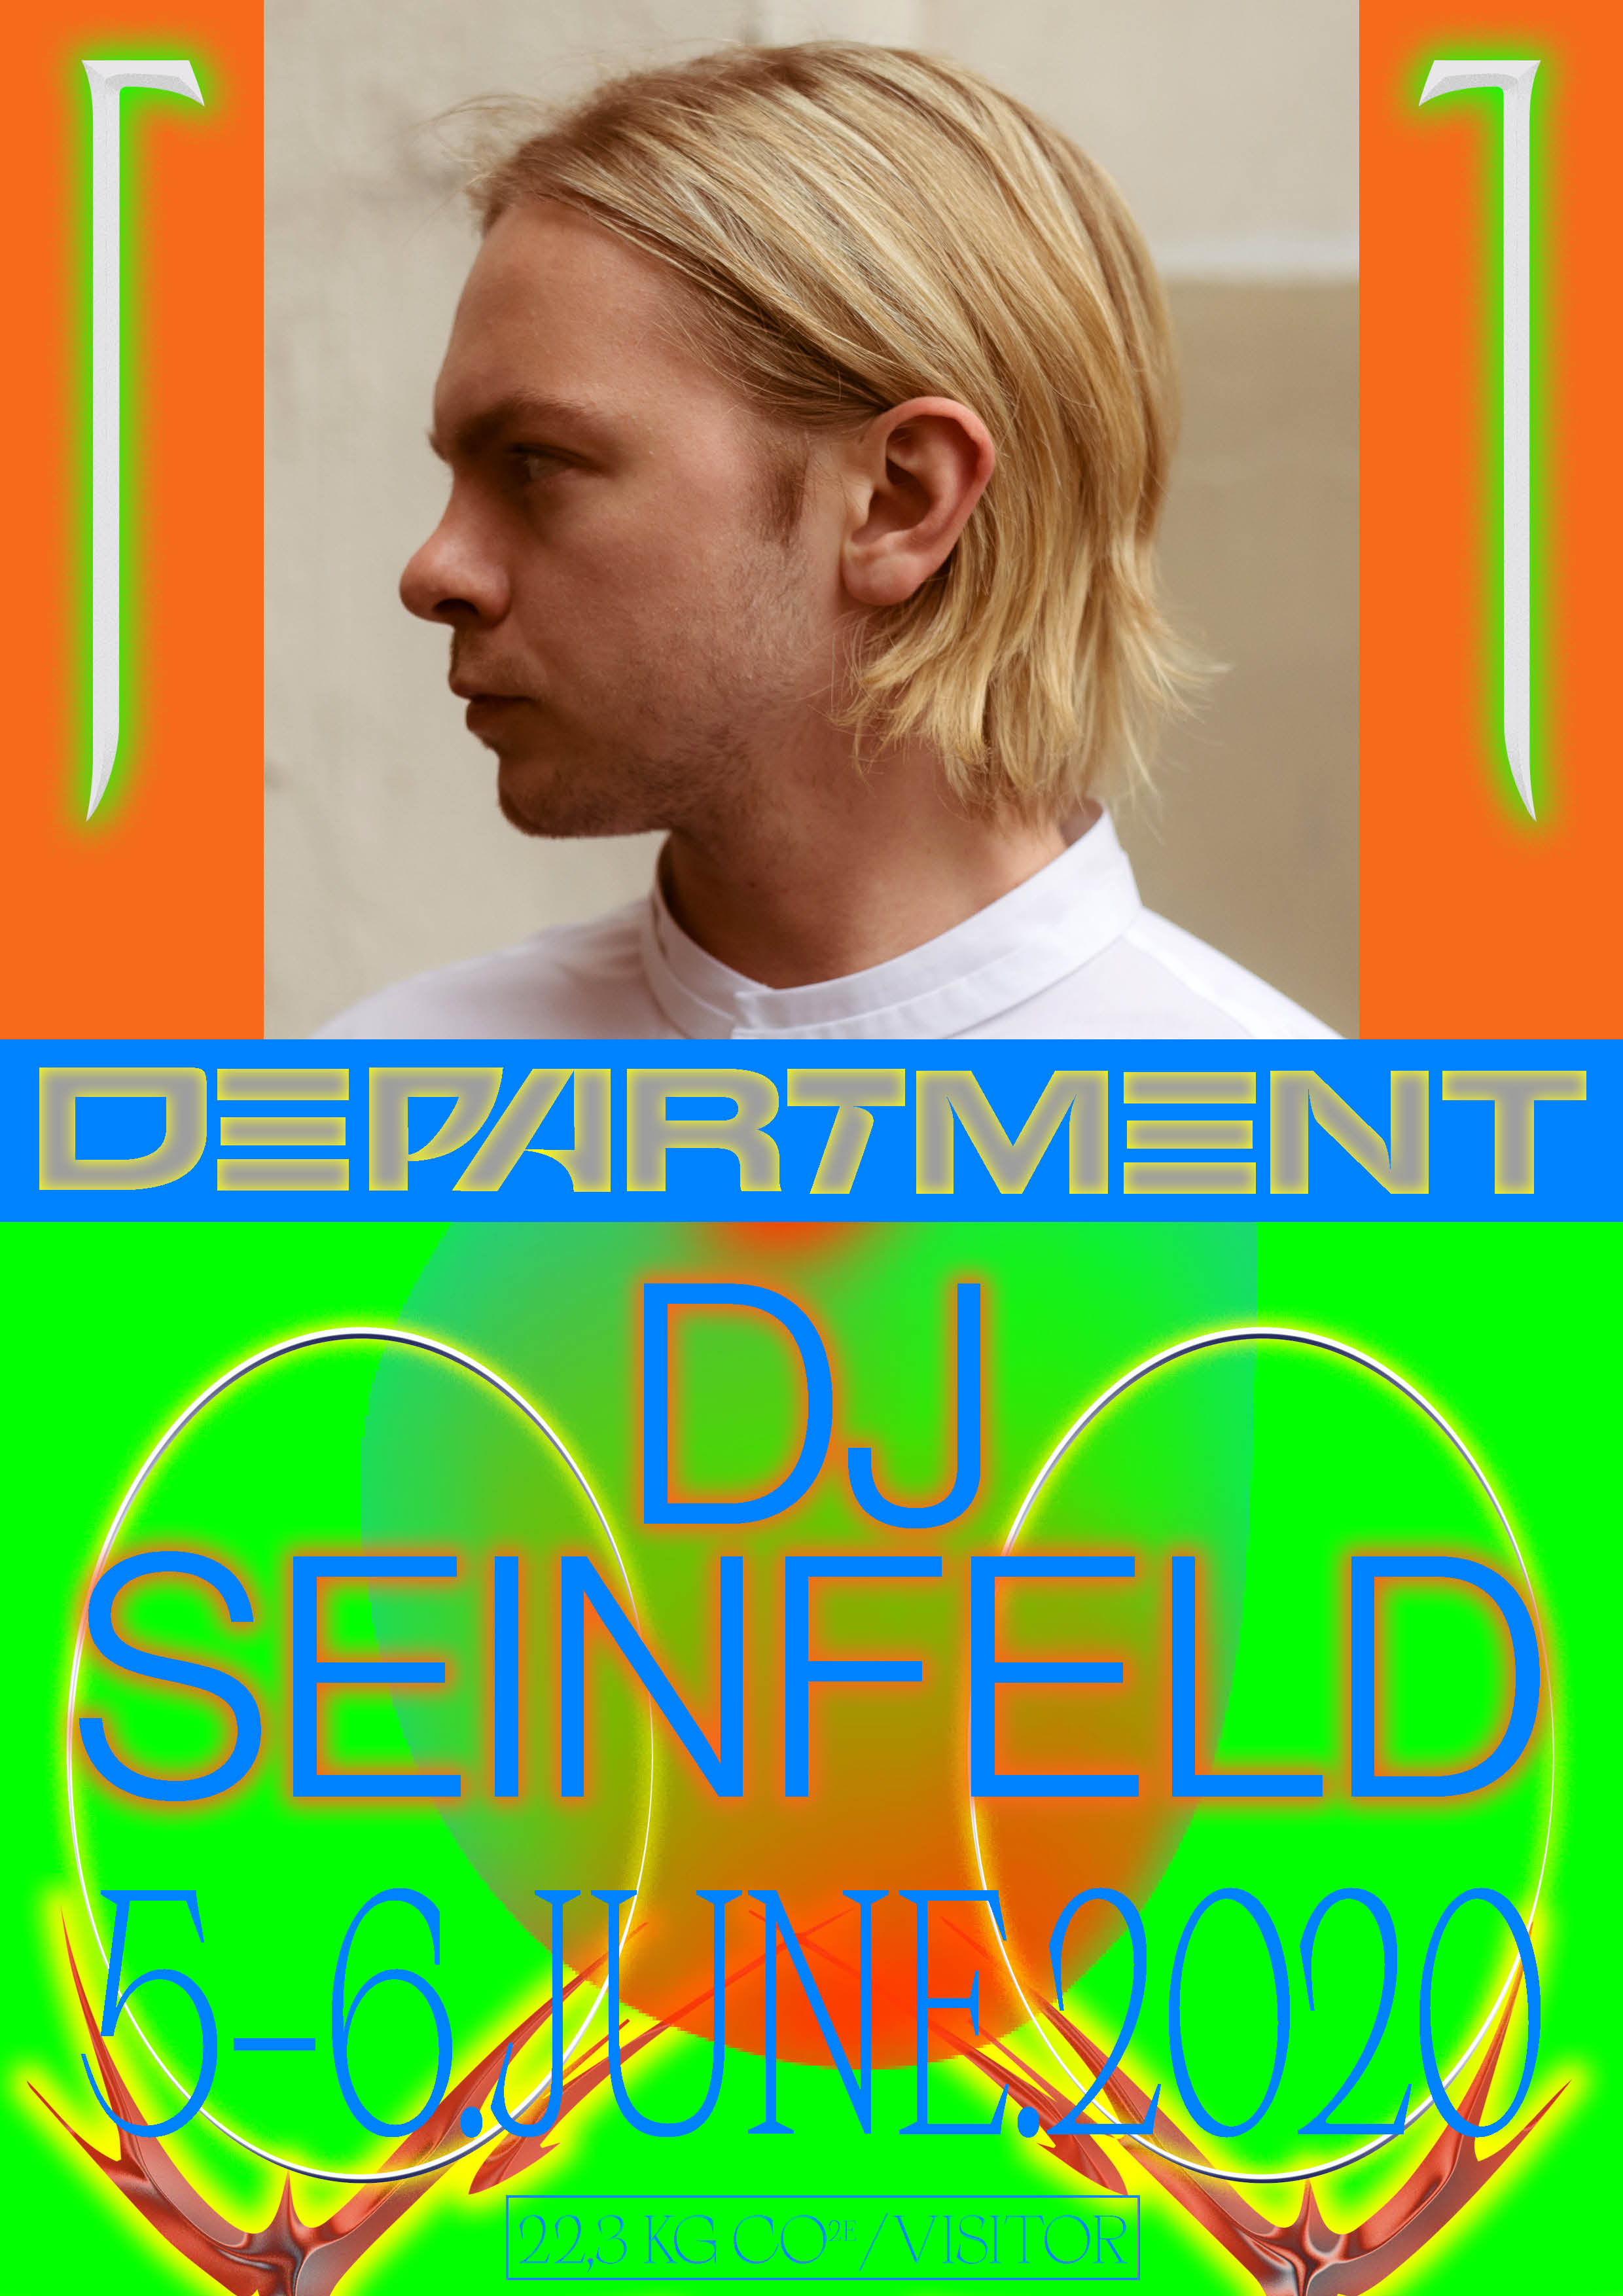 DJ Seinfeld Stockholm Department Festival